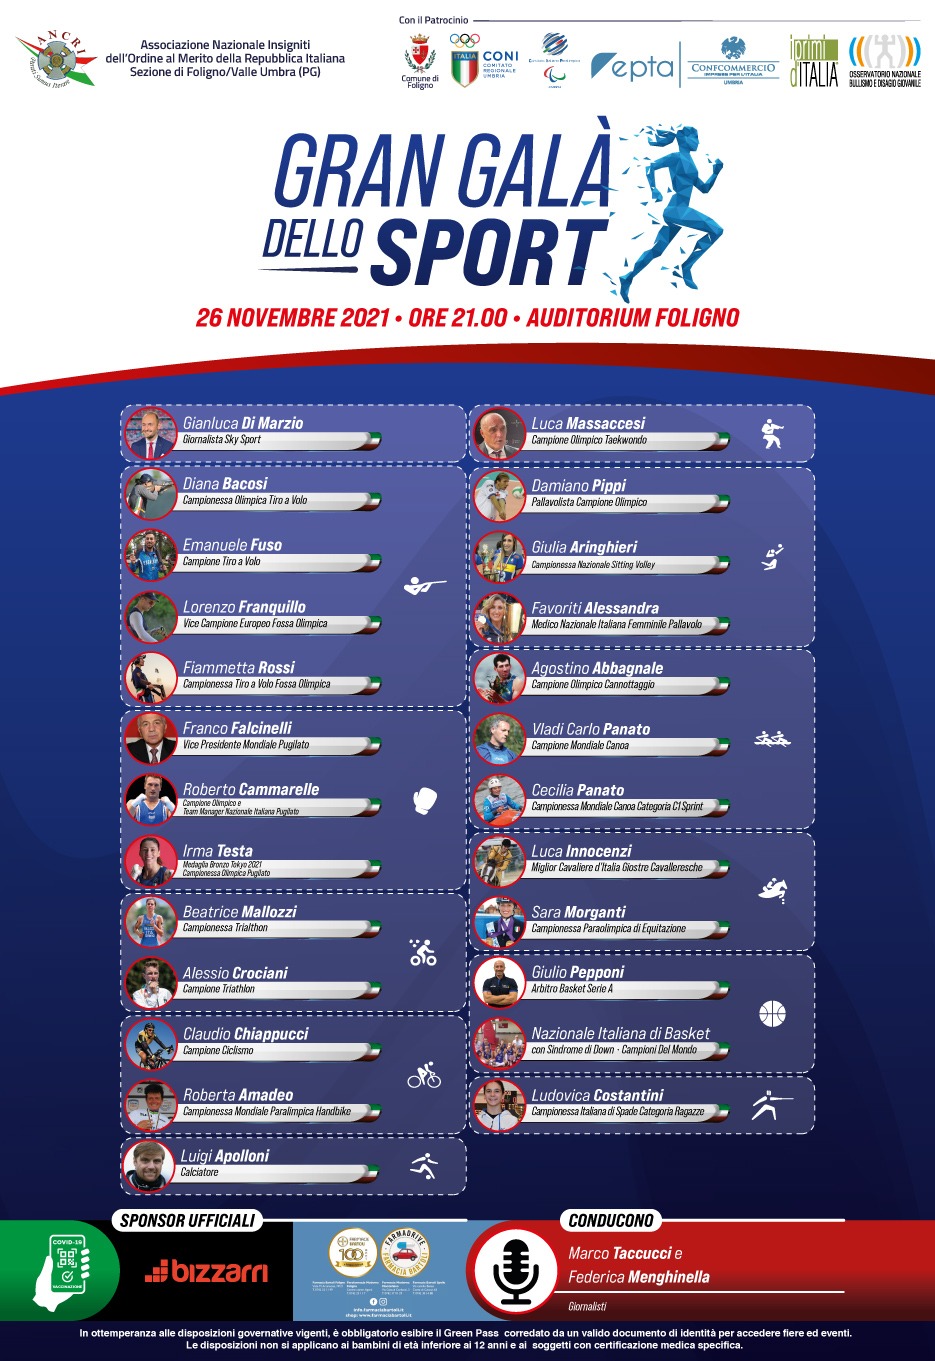 Il 26 Novembre al Gran Galà dello Sport di Foligno ospiti il Pres. EUBC Falcinelli, Roberto Cammarelle e Irma Testa